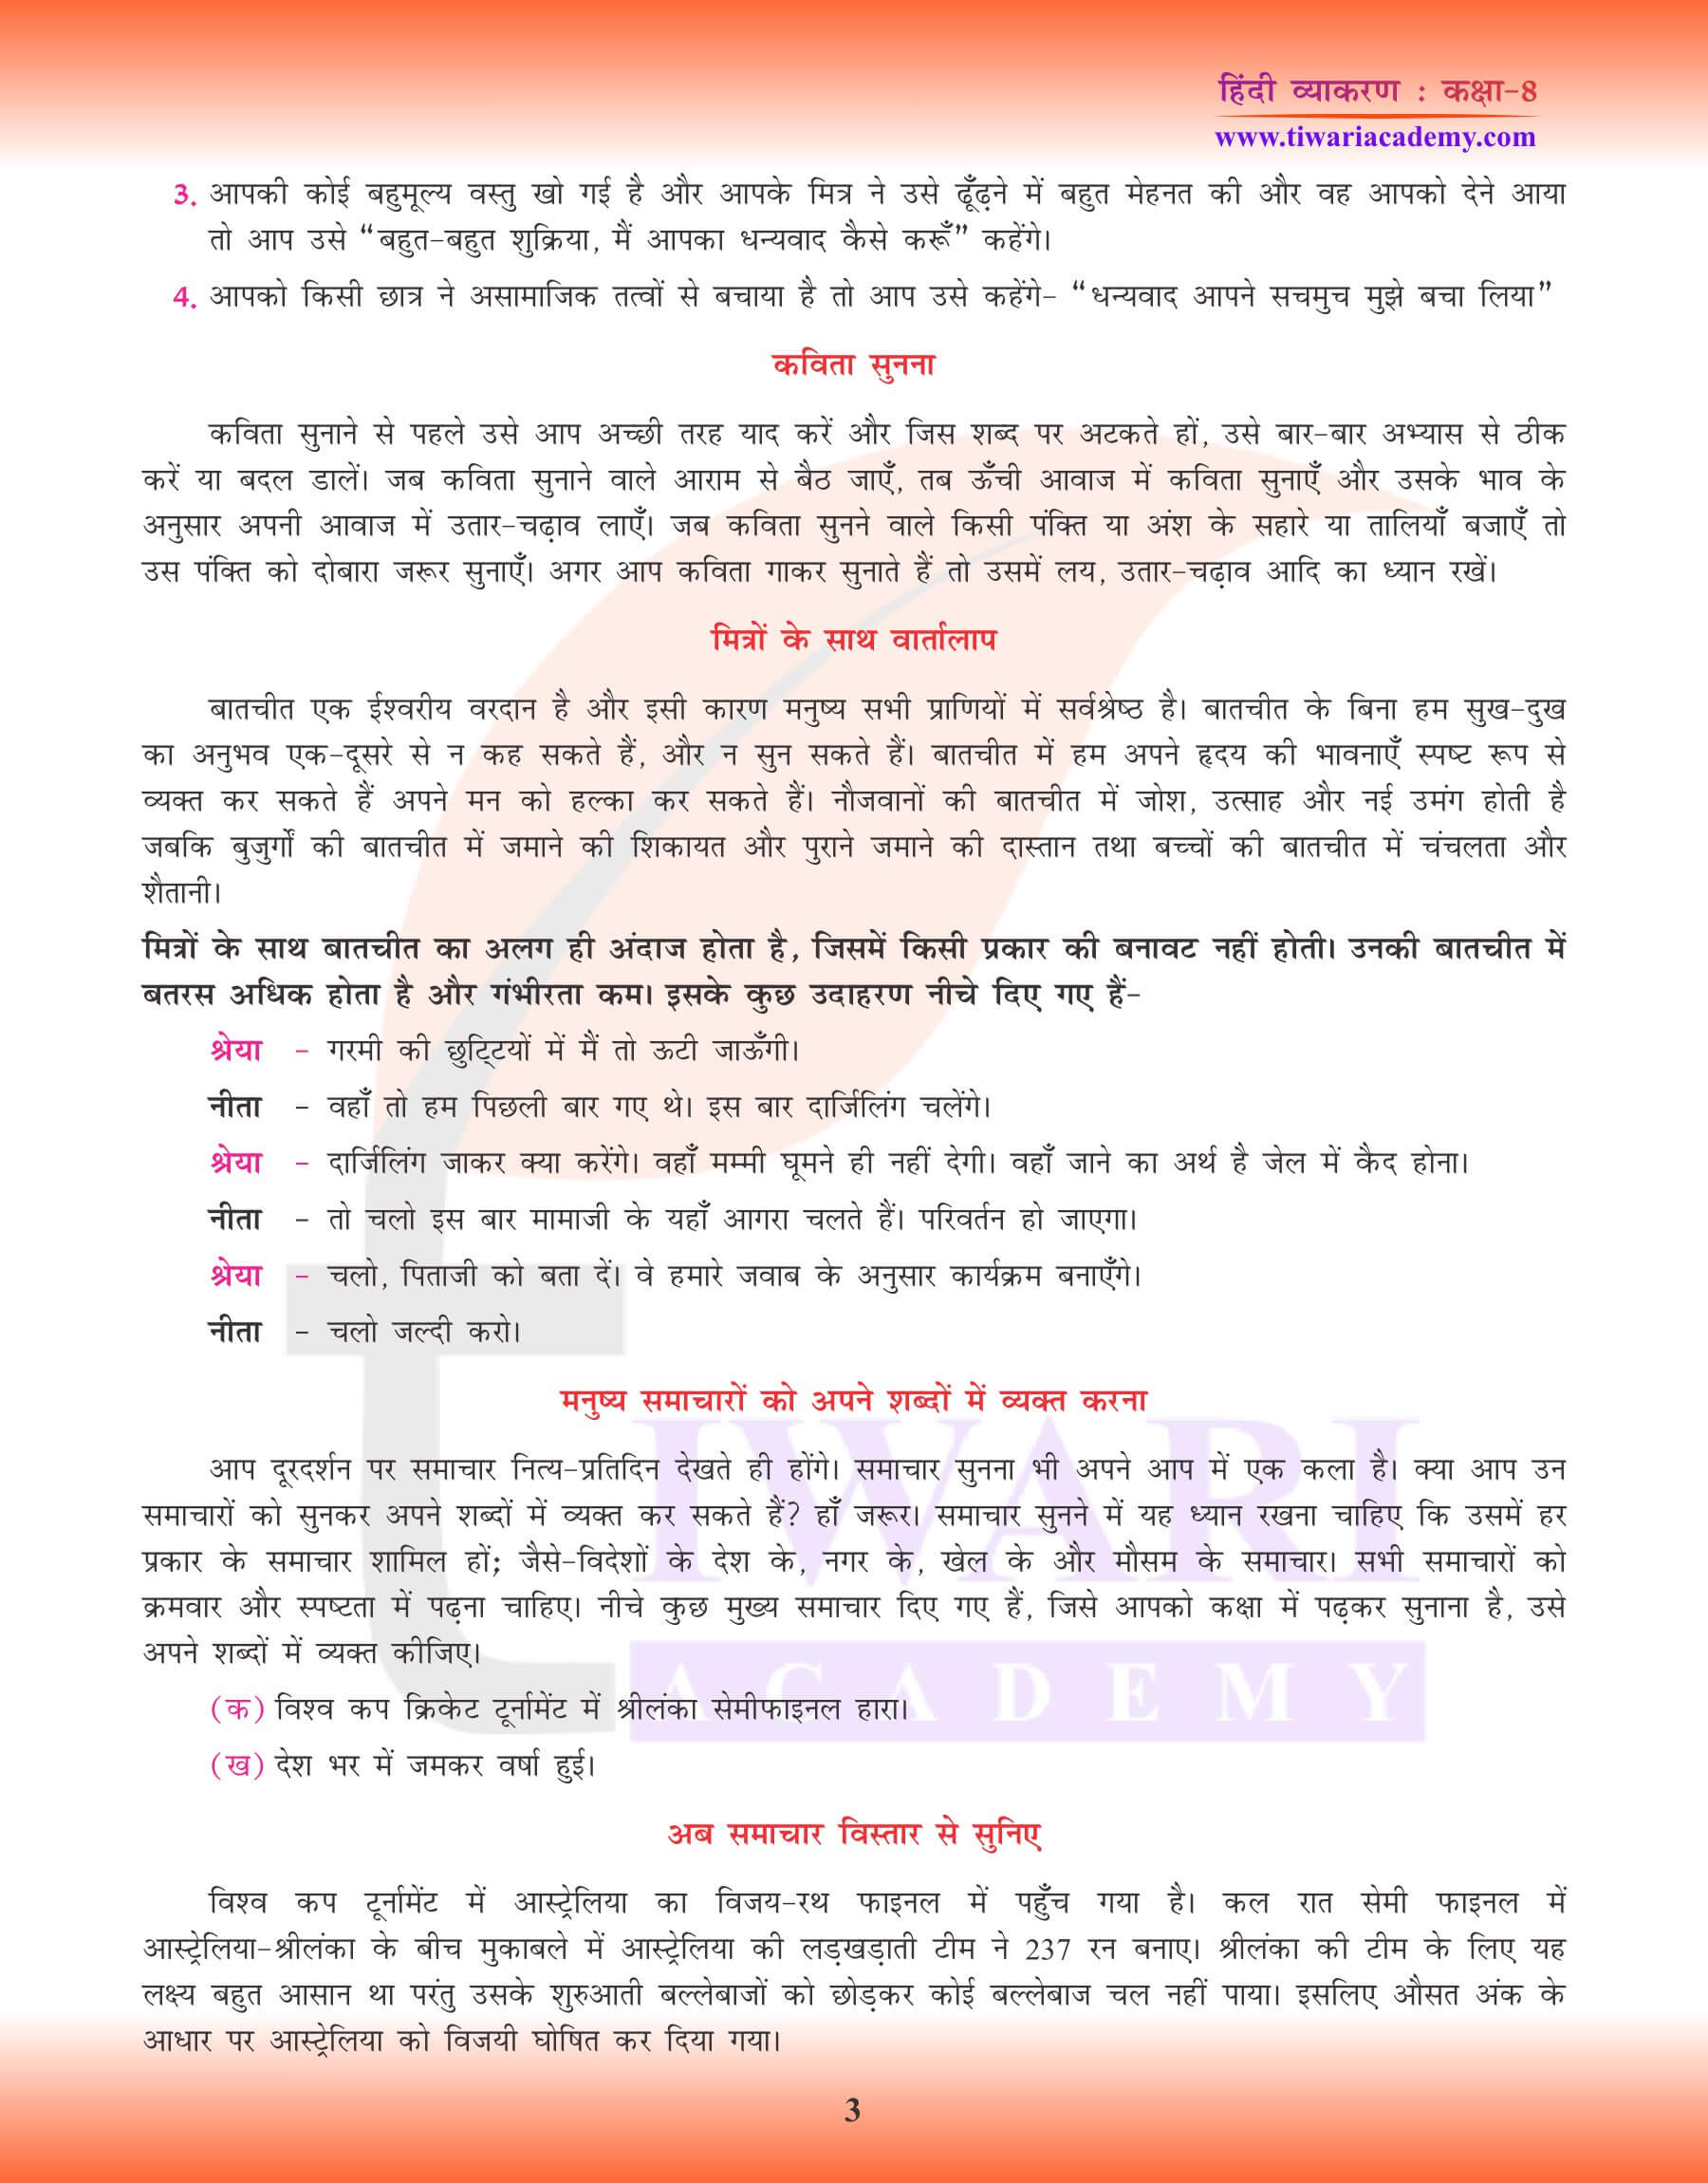 कक्षा 8 हिंदी व्याकरण में मौखिक अभिव्यक्ति के उत्तर